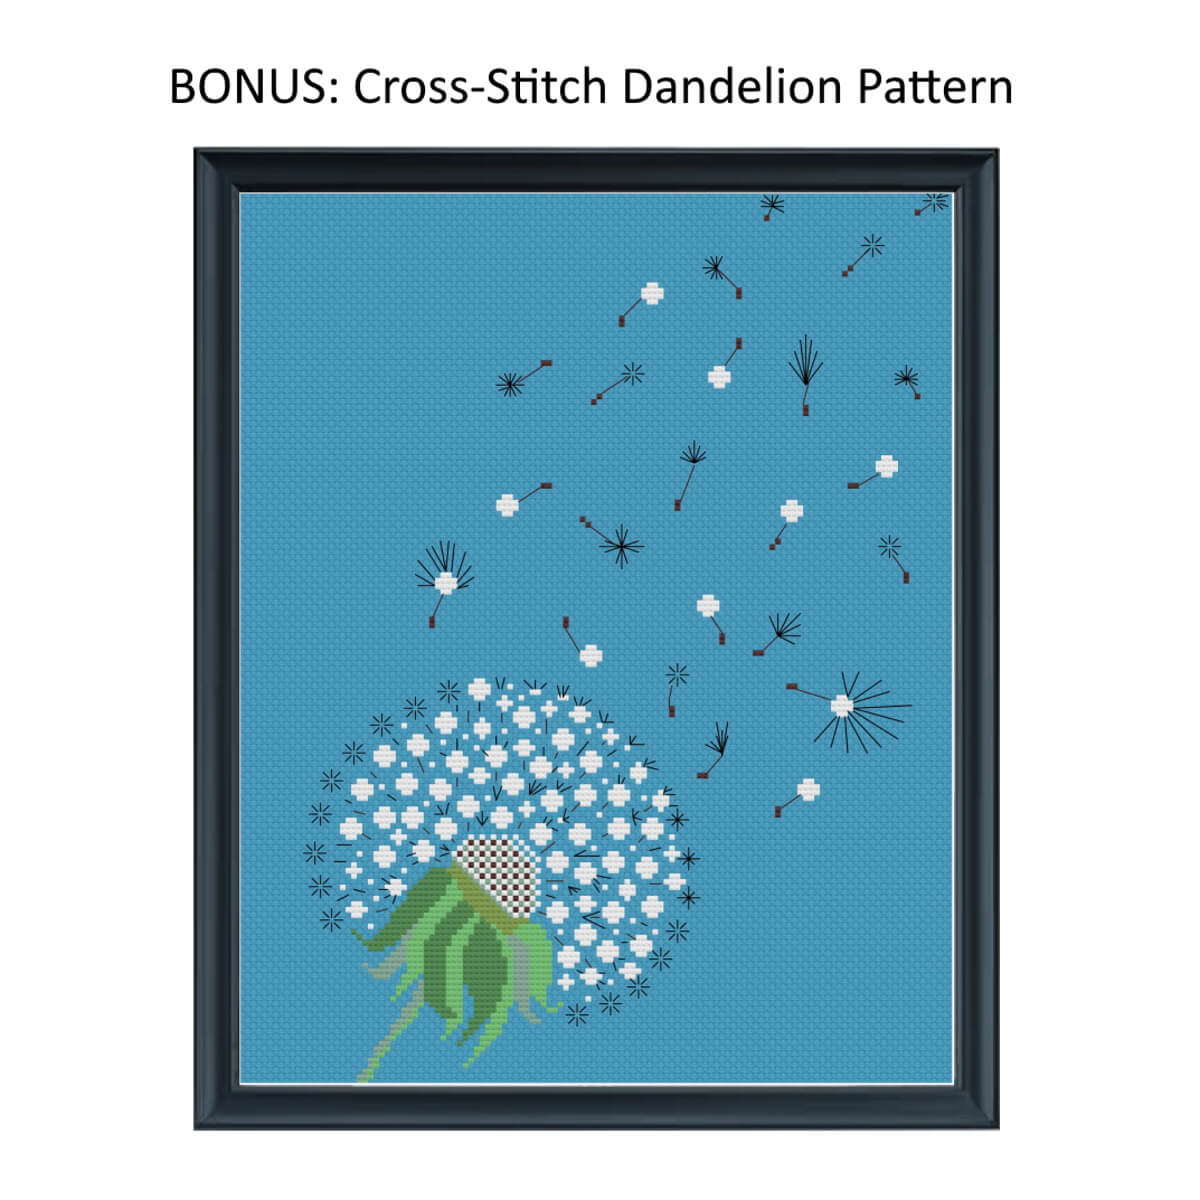 Handstickdesign Dandelion (Download)